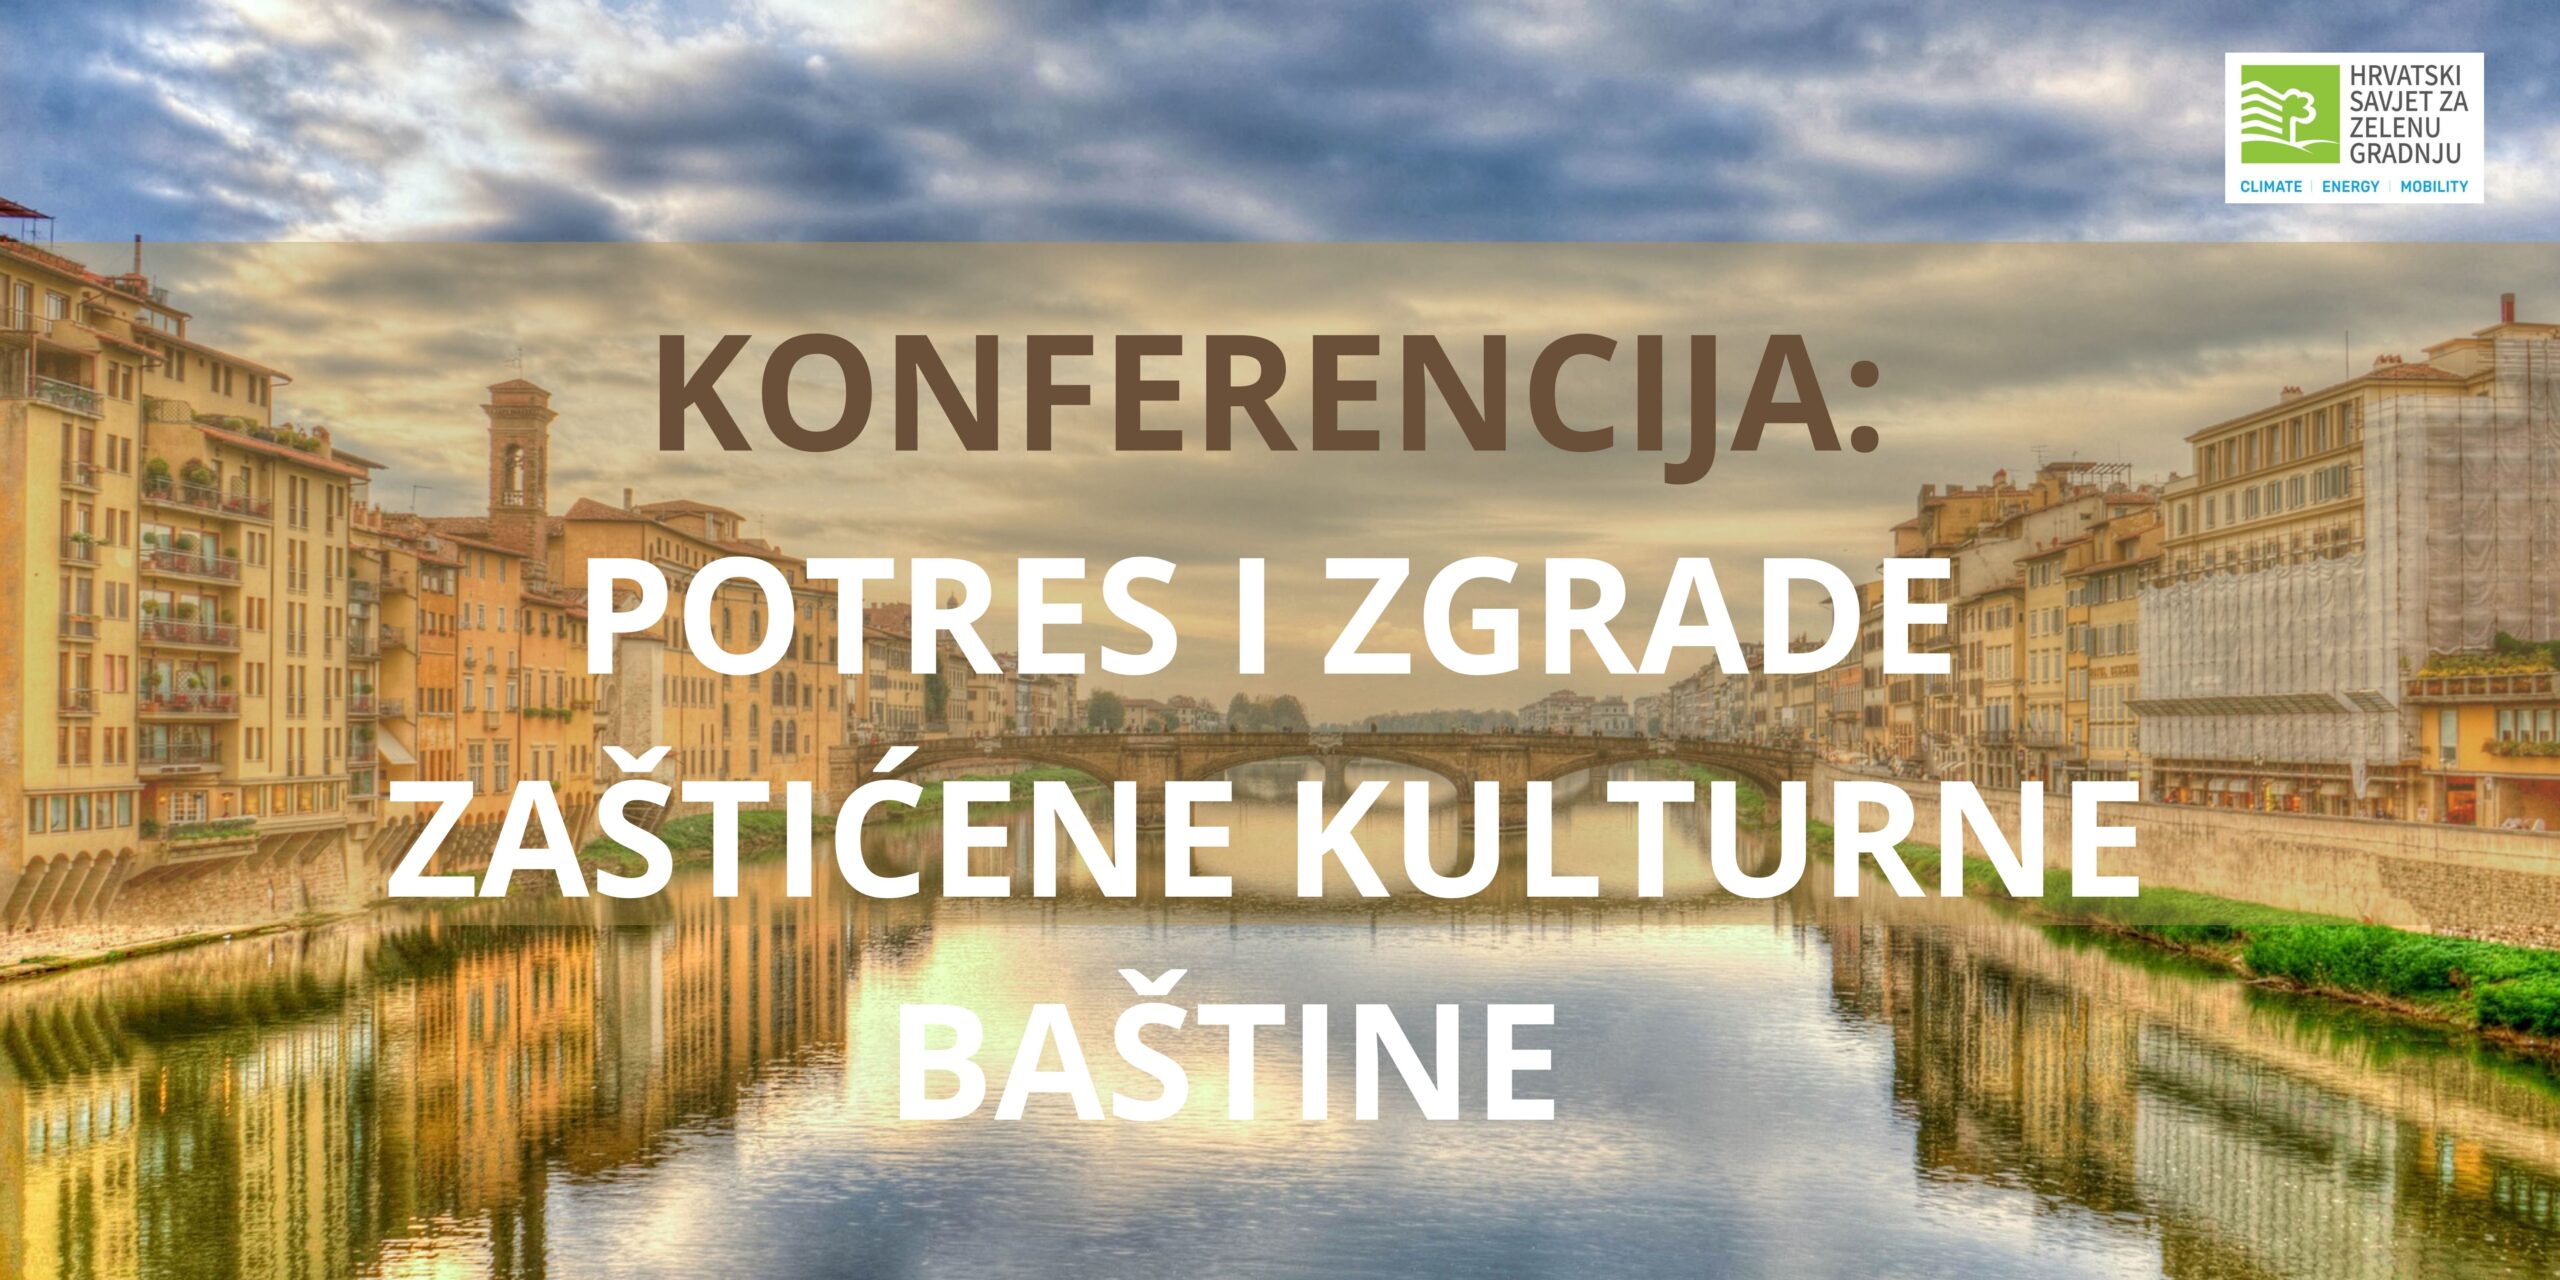 POTRES I ZGRADE ZAŠTIĆENE KULTURNE BAŠTINE, 3.3.2022.